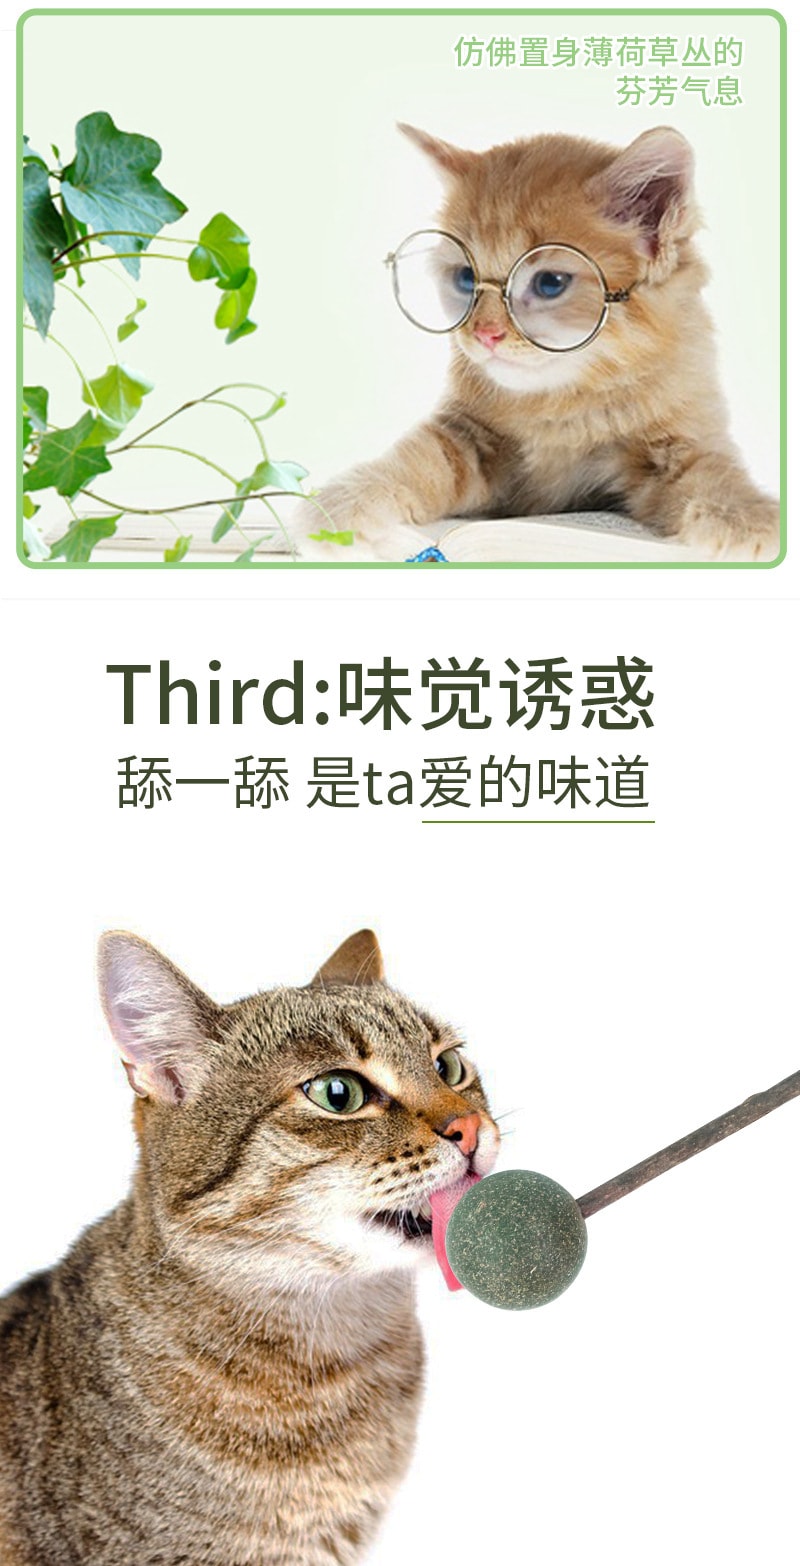 【中国直邮】尾大的喵 猫薄荷球 磨牙洁牙 清新口气 宠物用品 2个装